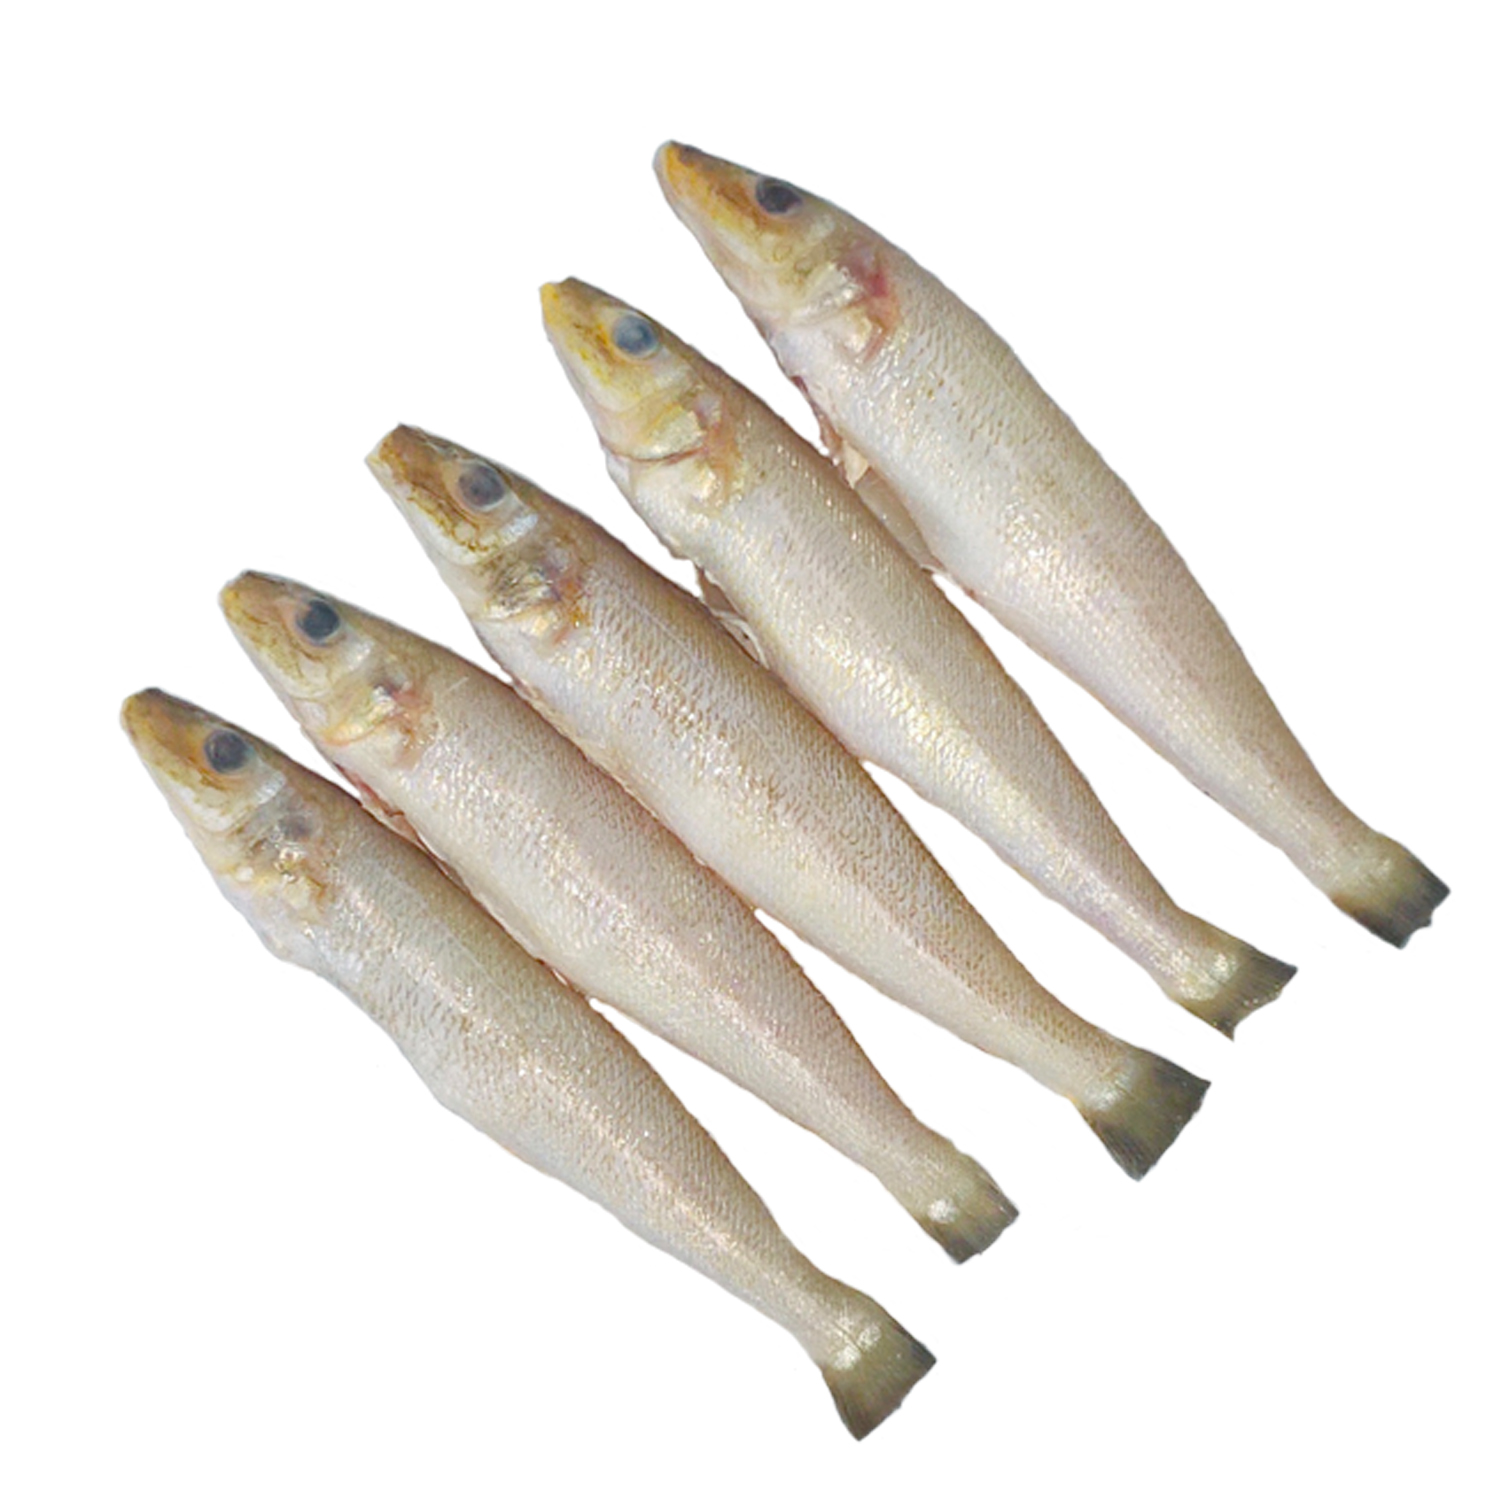 Lady Fish Whole Clean 500Gms pack - 4-6pcs